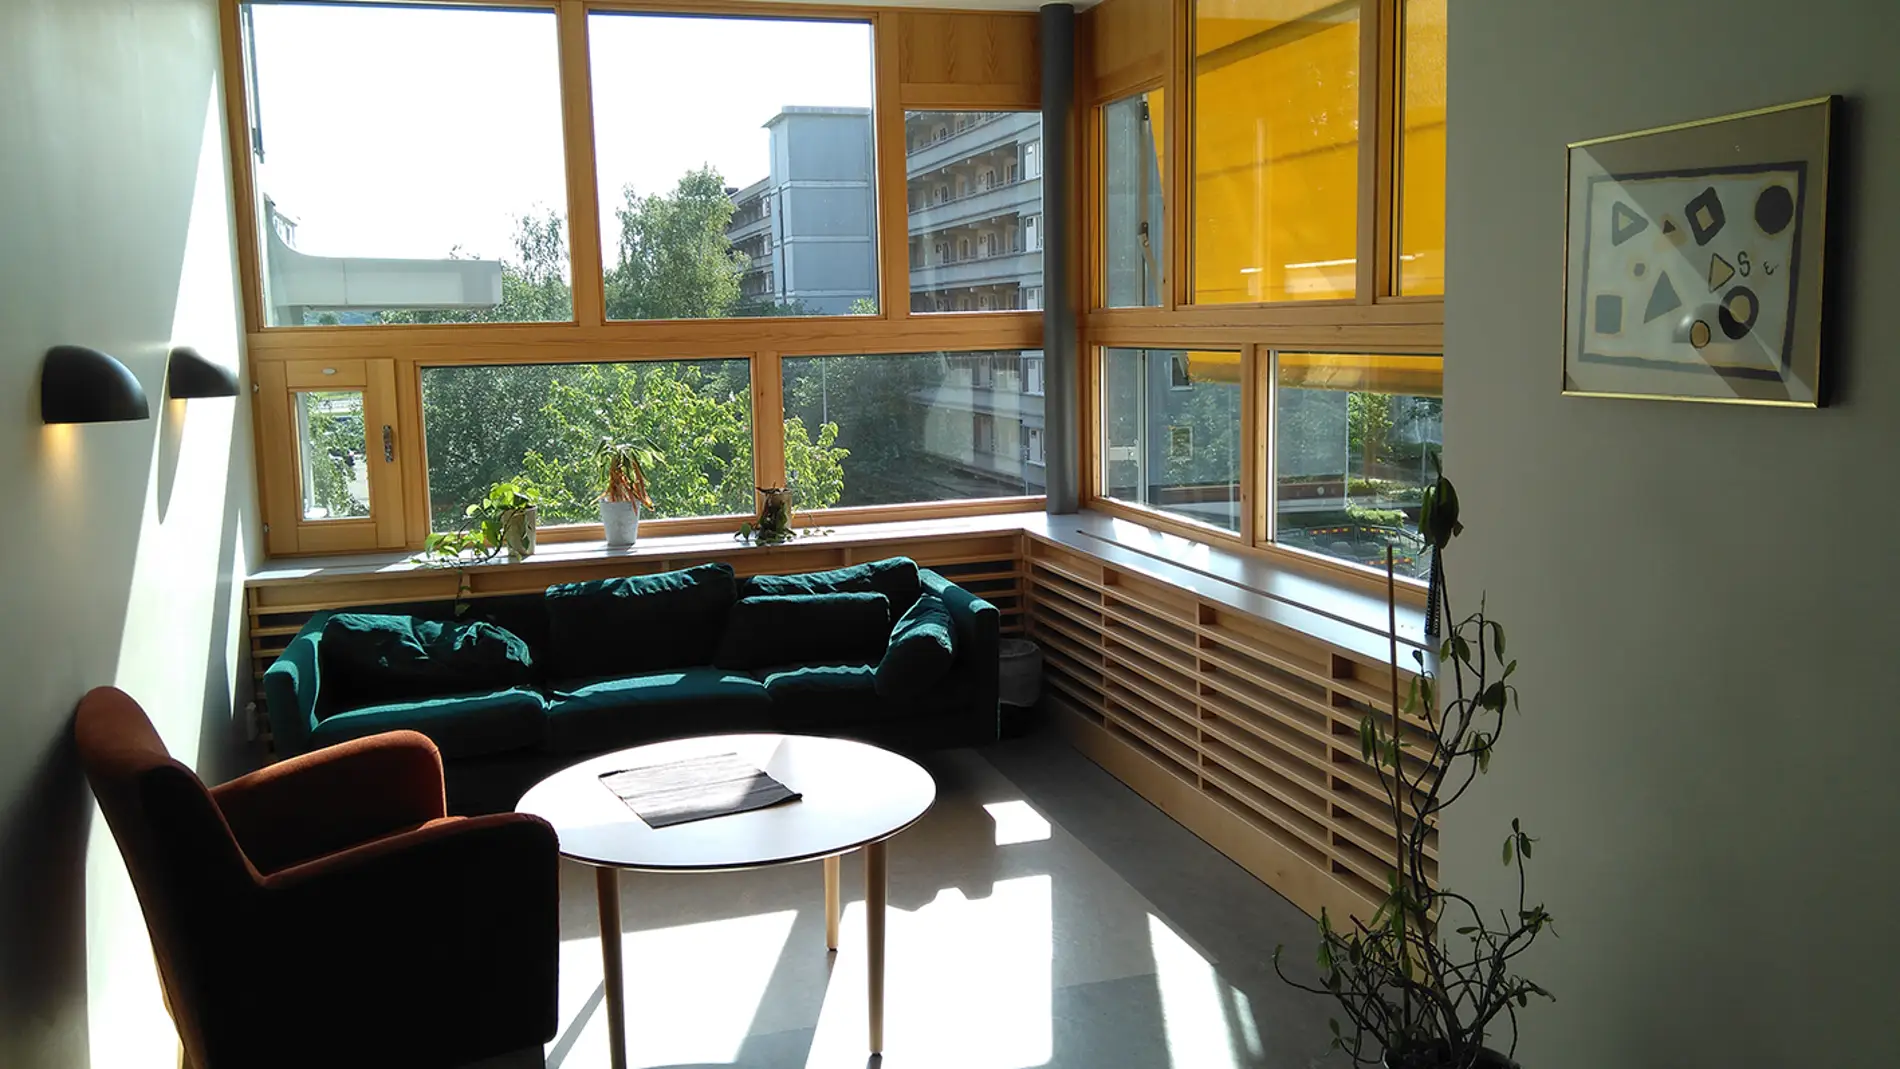 Sala de estar para pacientes en la unidad psiquiátrica del Östra Hospital (Gotemburgo, Suecia) por White Arkitekter. Fotografiado por Laura Cambra Rufino.